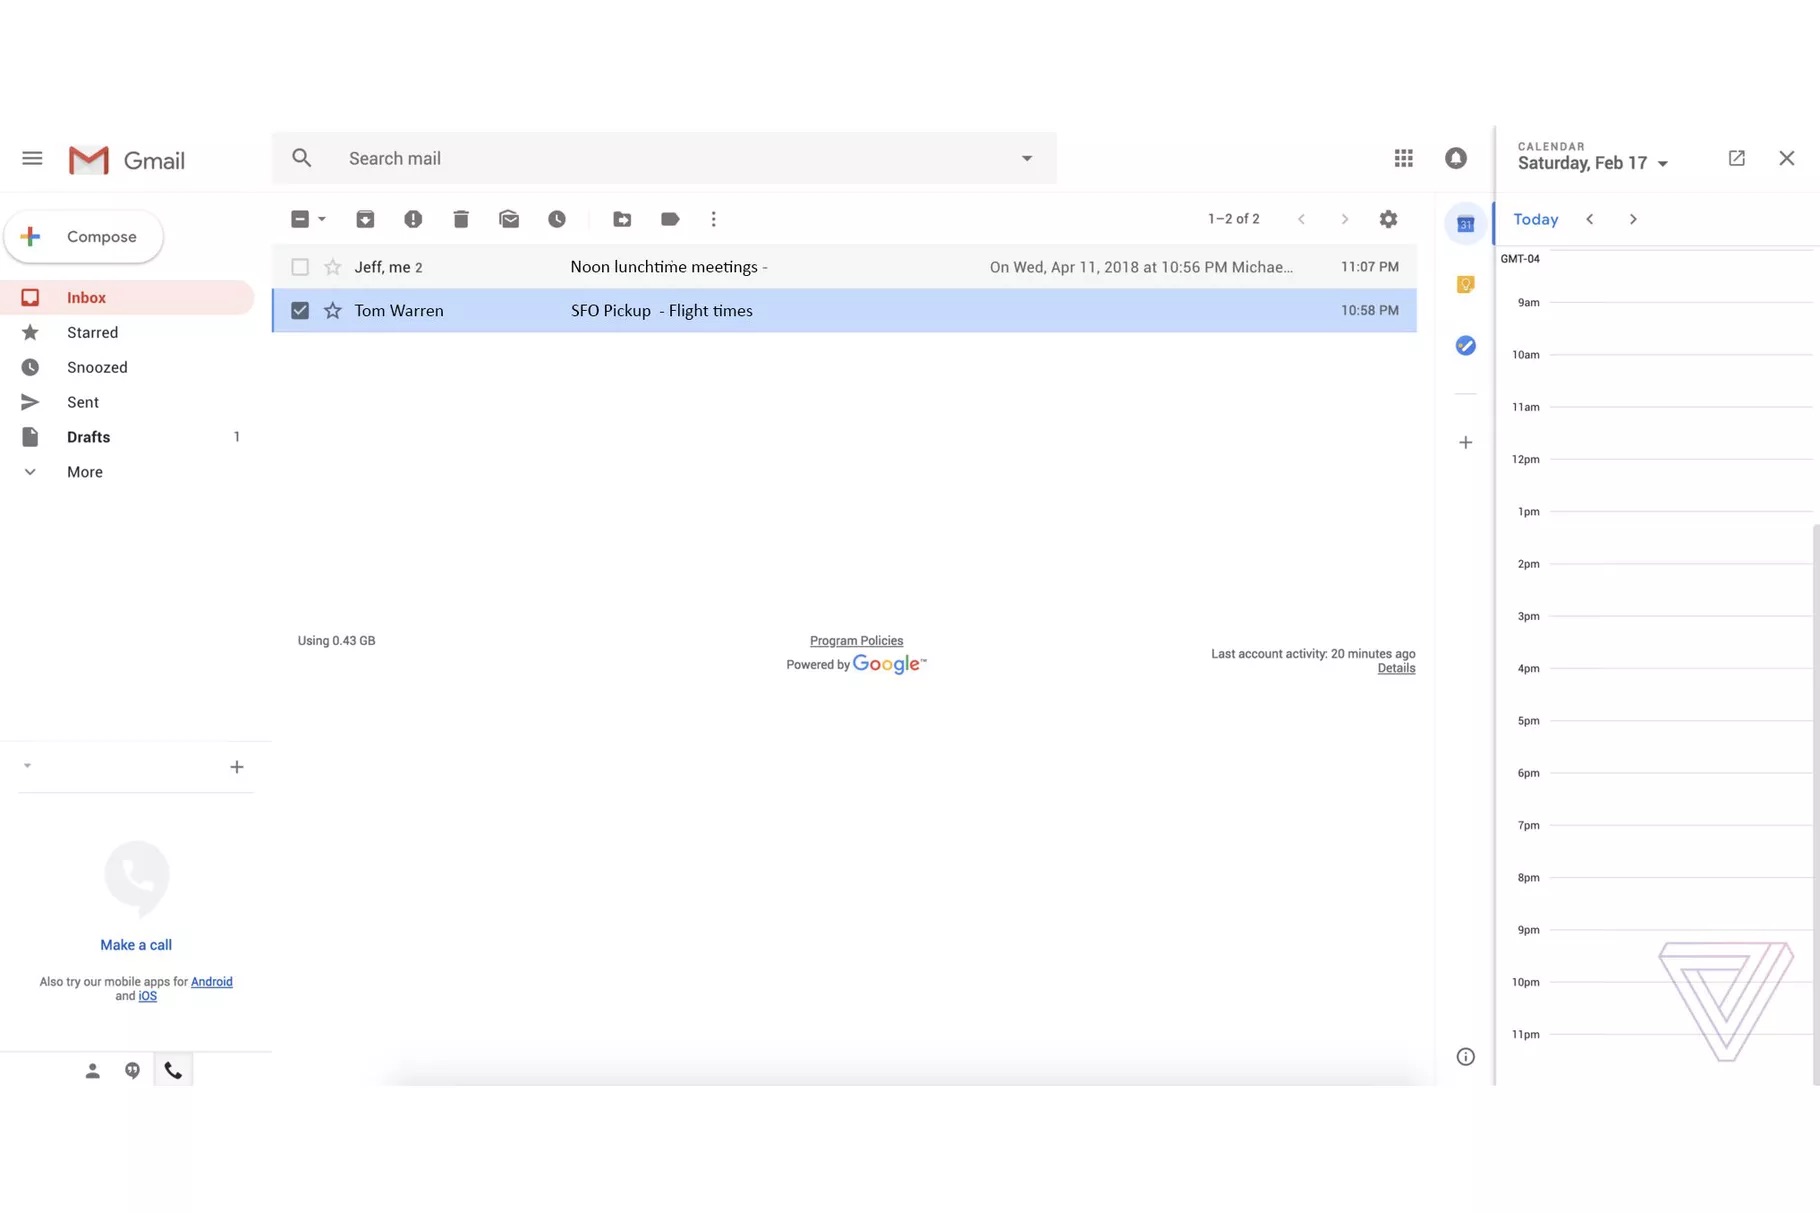 twarren gmaildesign 0